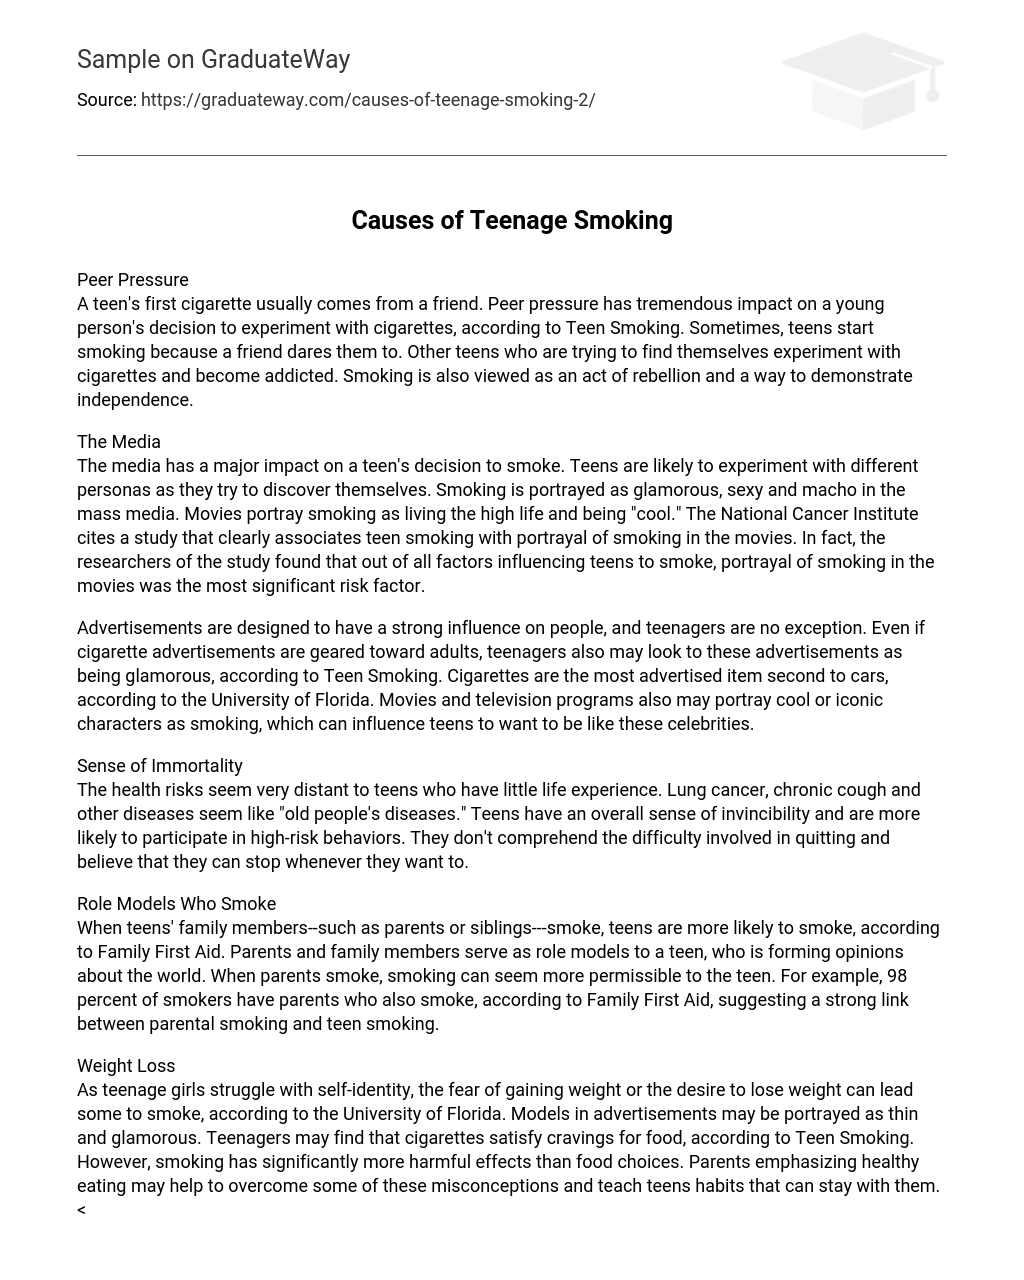 Causes of Teenage Smoking